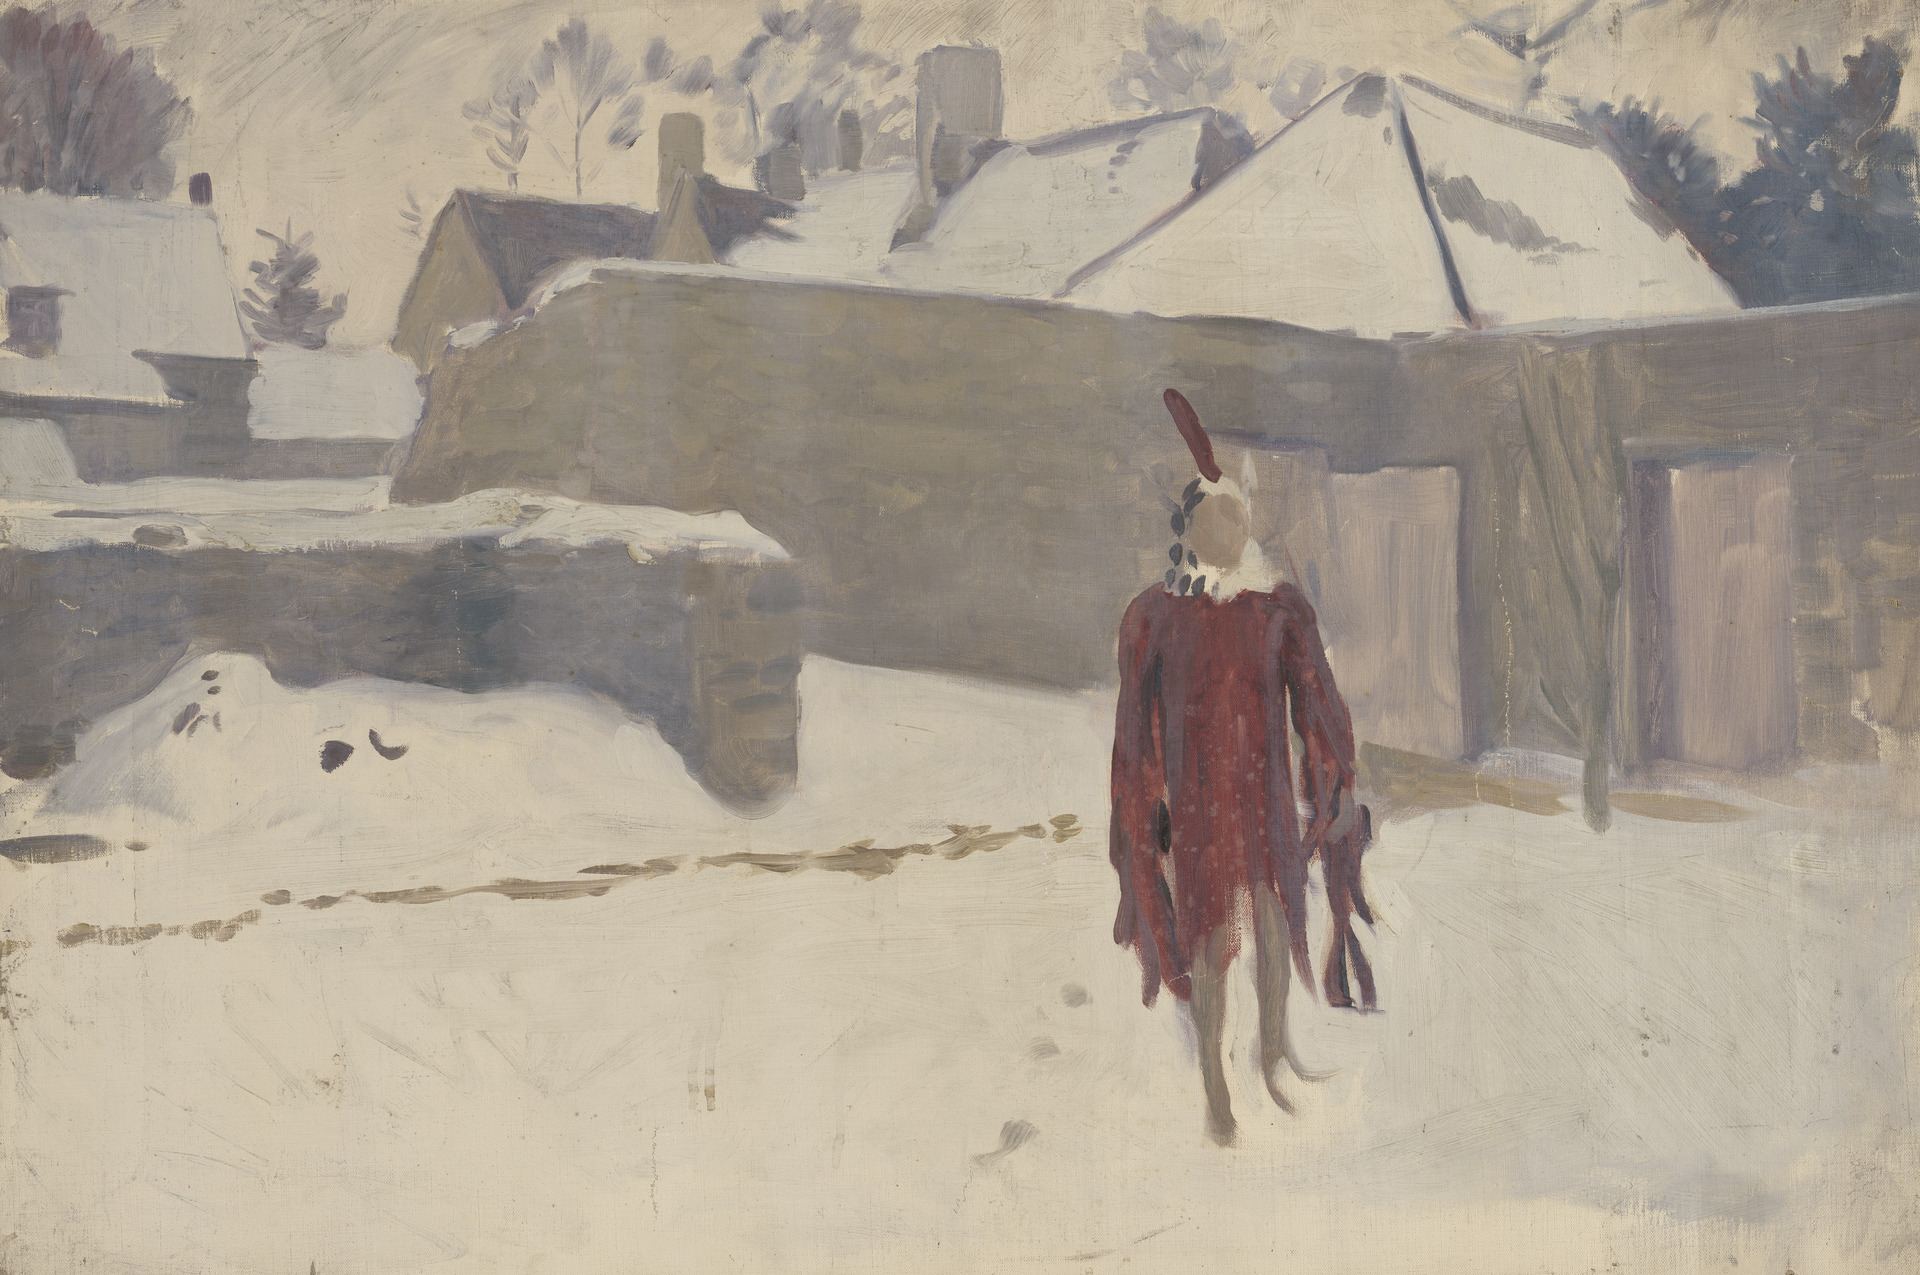 Манекен у снігу by John Singer Sargent - між 1891–93 роками - 63.5 x 76.2 см 